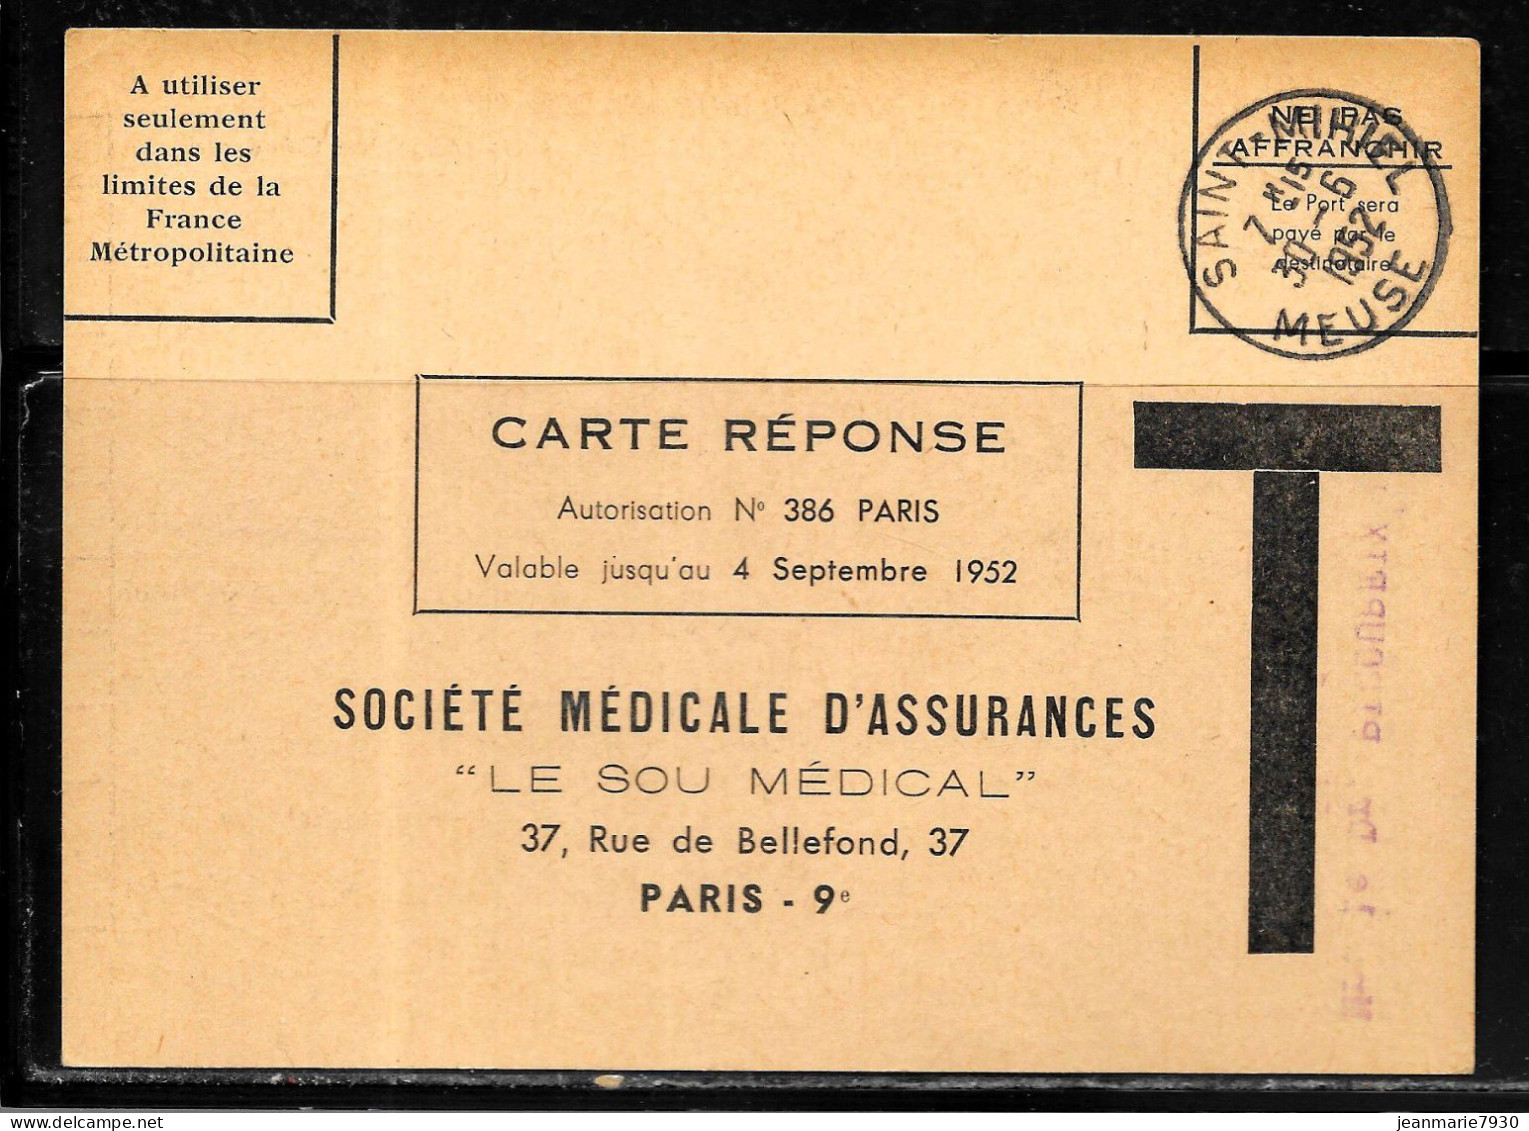 F376 - CARTE REPONSE DE LA SOCIETE MEDICALE D'ASSURANCES OBLITEREE SAINT MIHIEL DU 30/06/52 - Lettres Civiles En Franchise